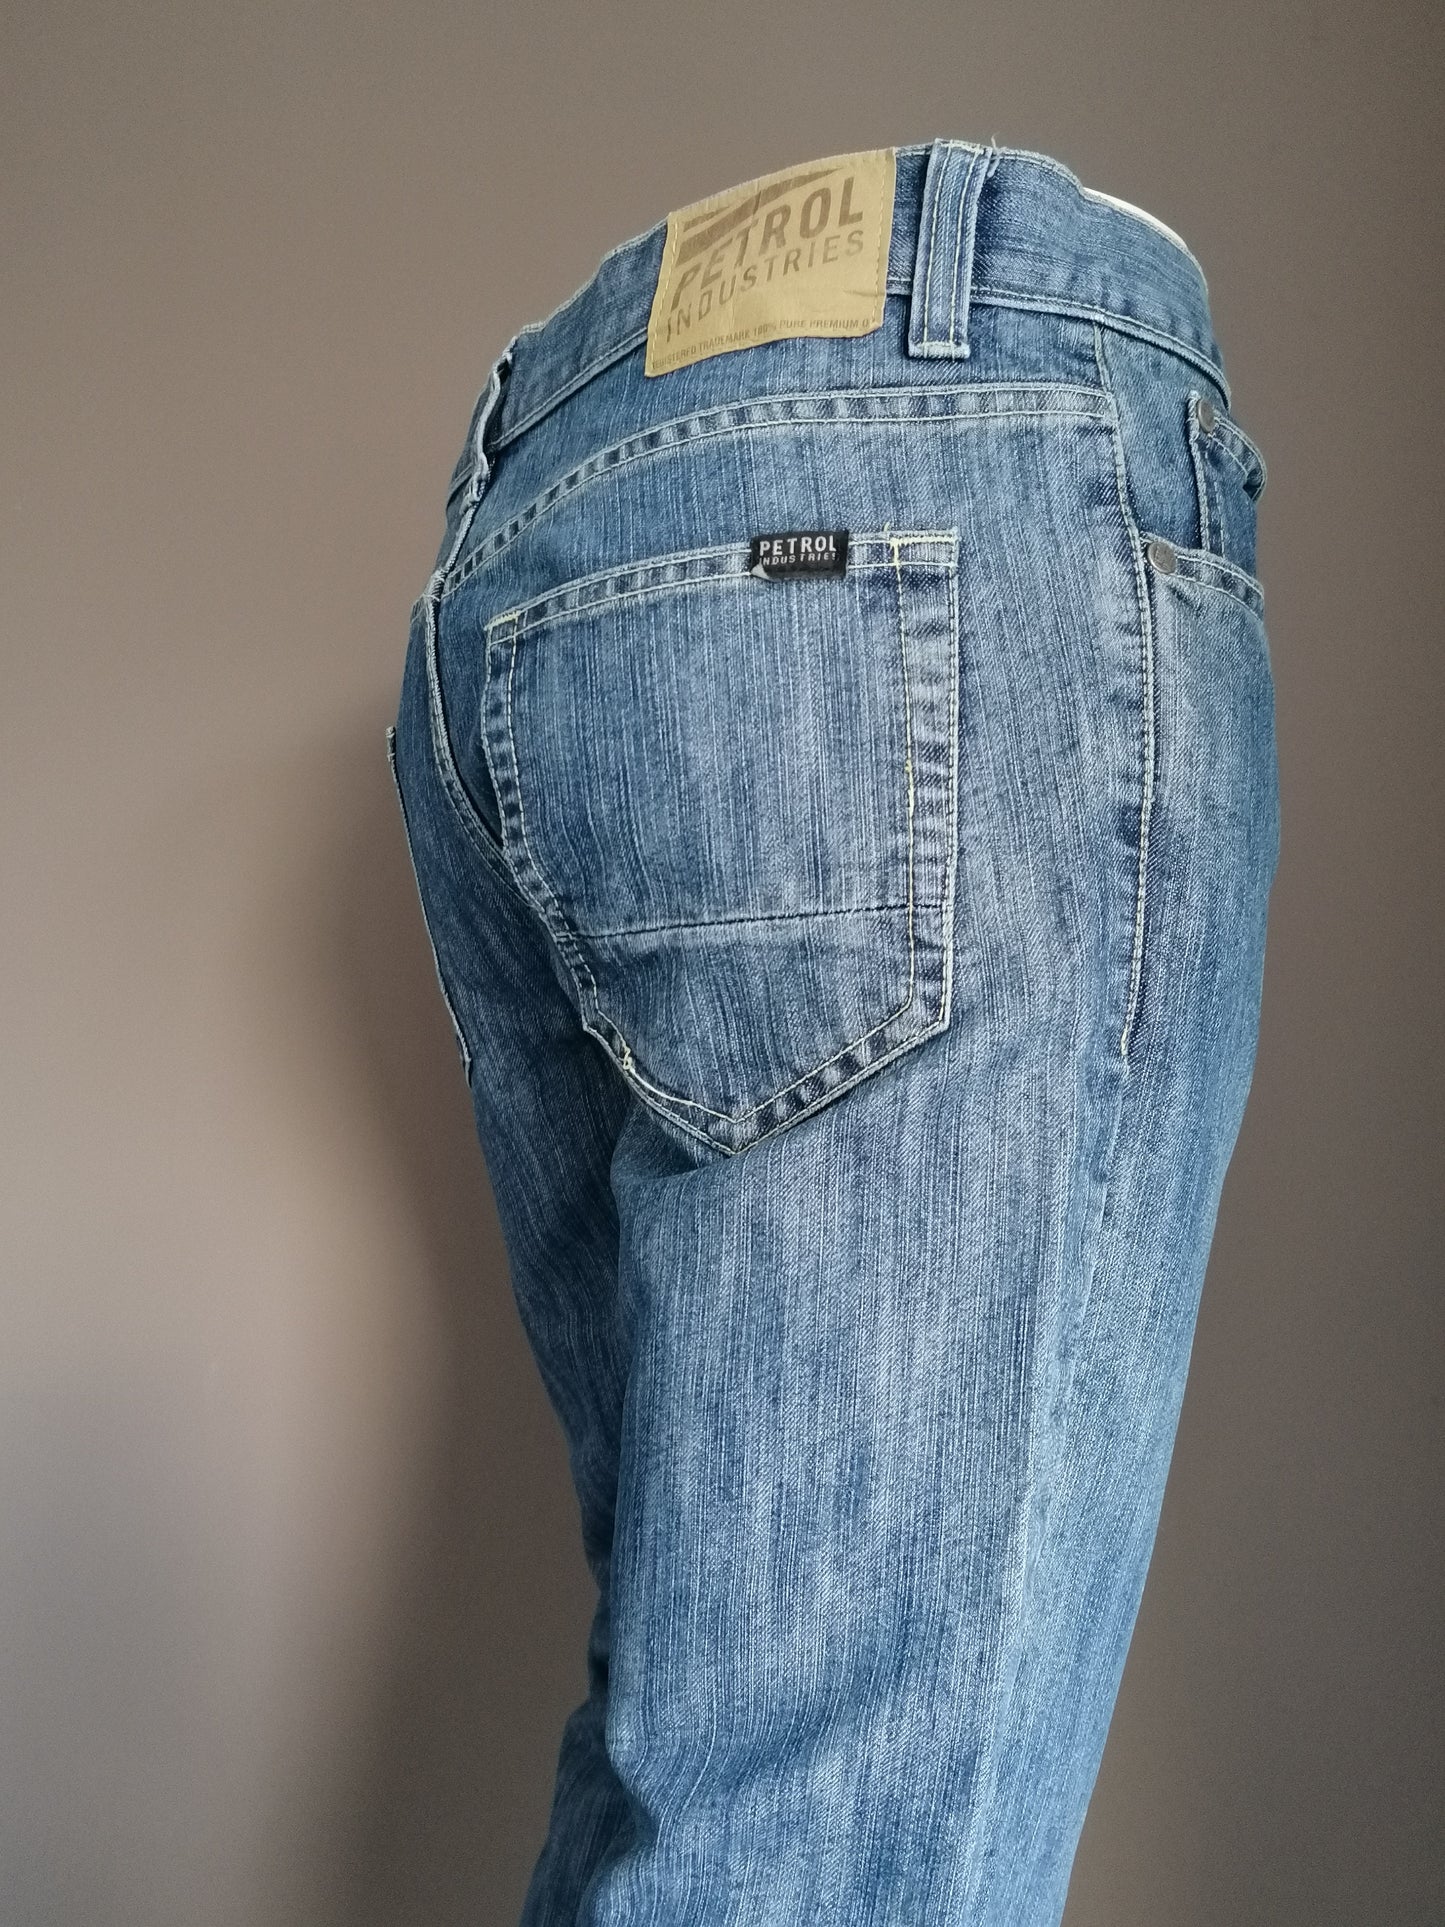 Petrol jeans. Blauw gekleurd. Maat W32 - 30. broek is ingekort.